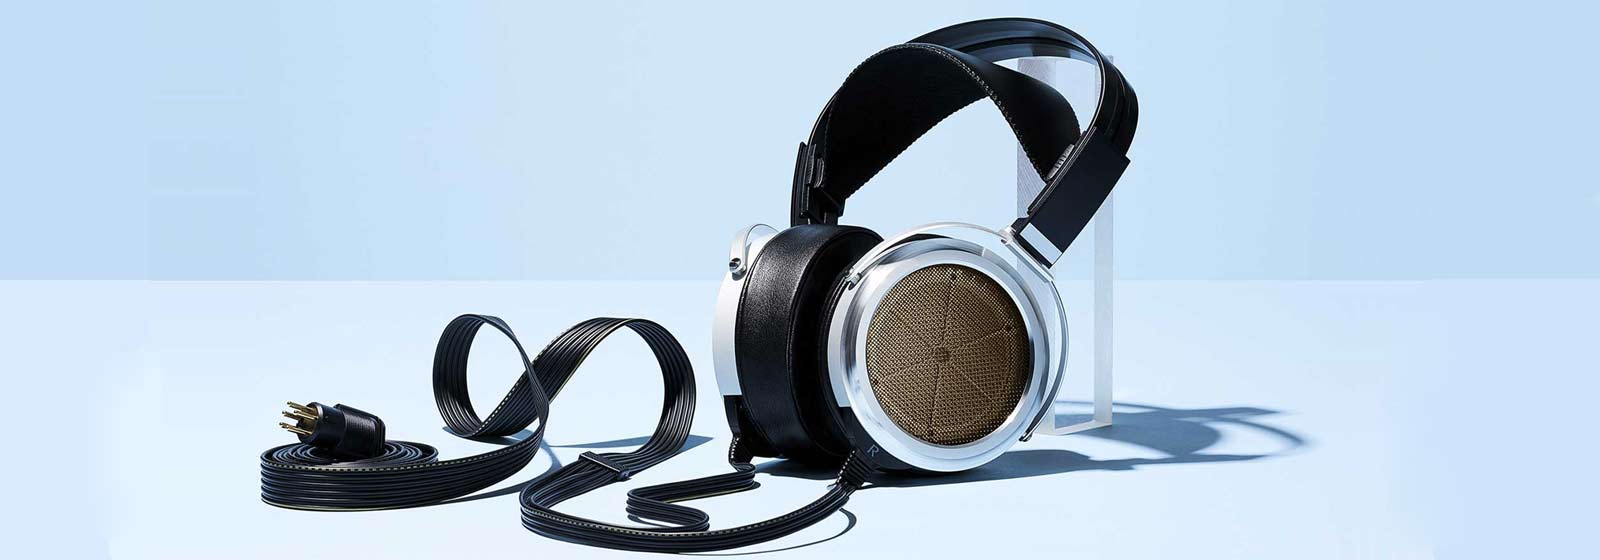 stax sr-009s headphones